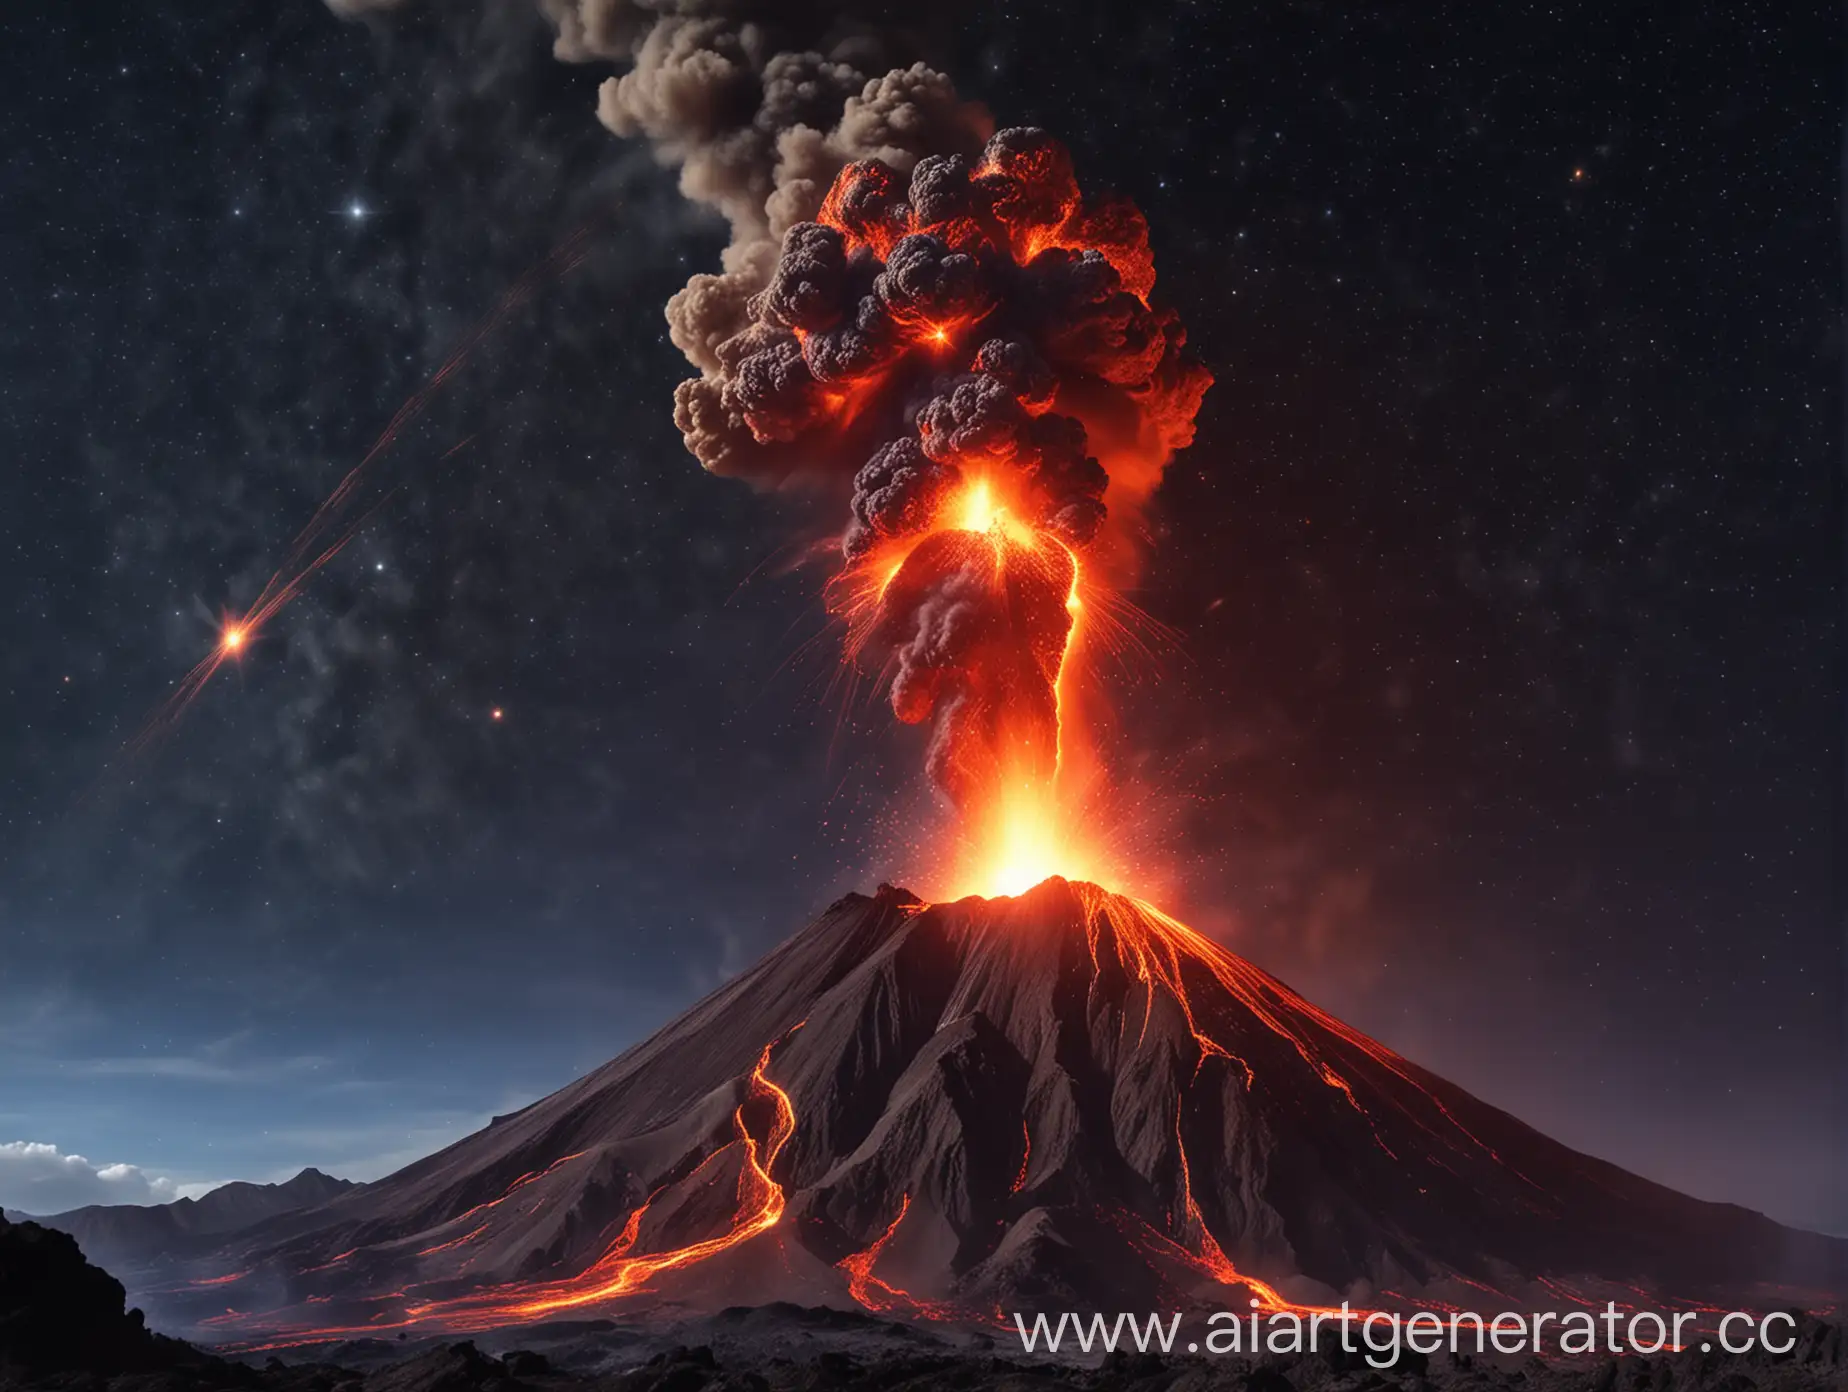 горящий вулкан, на фоне одинокой звезды